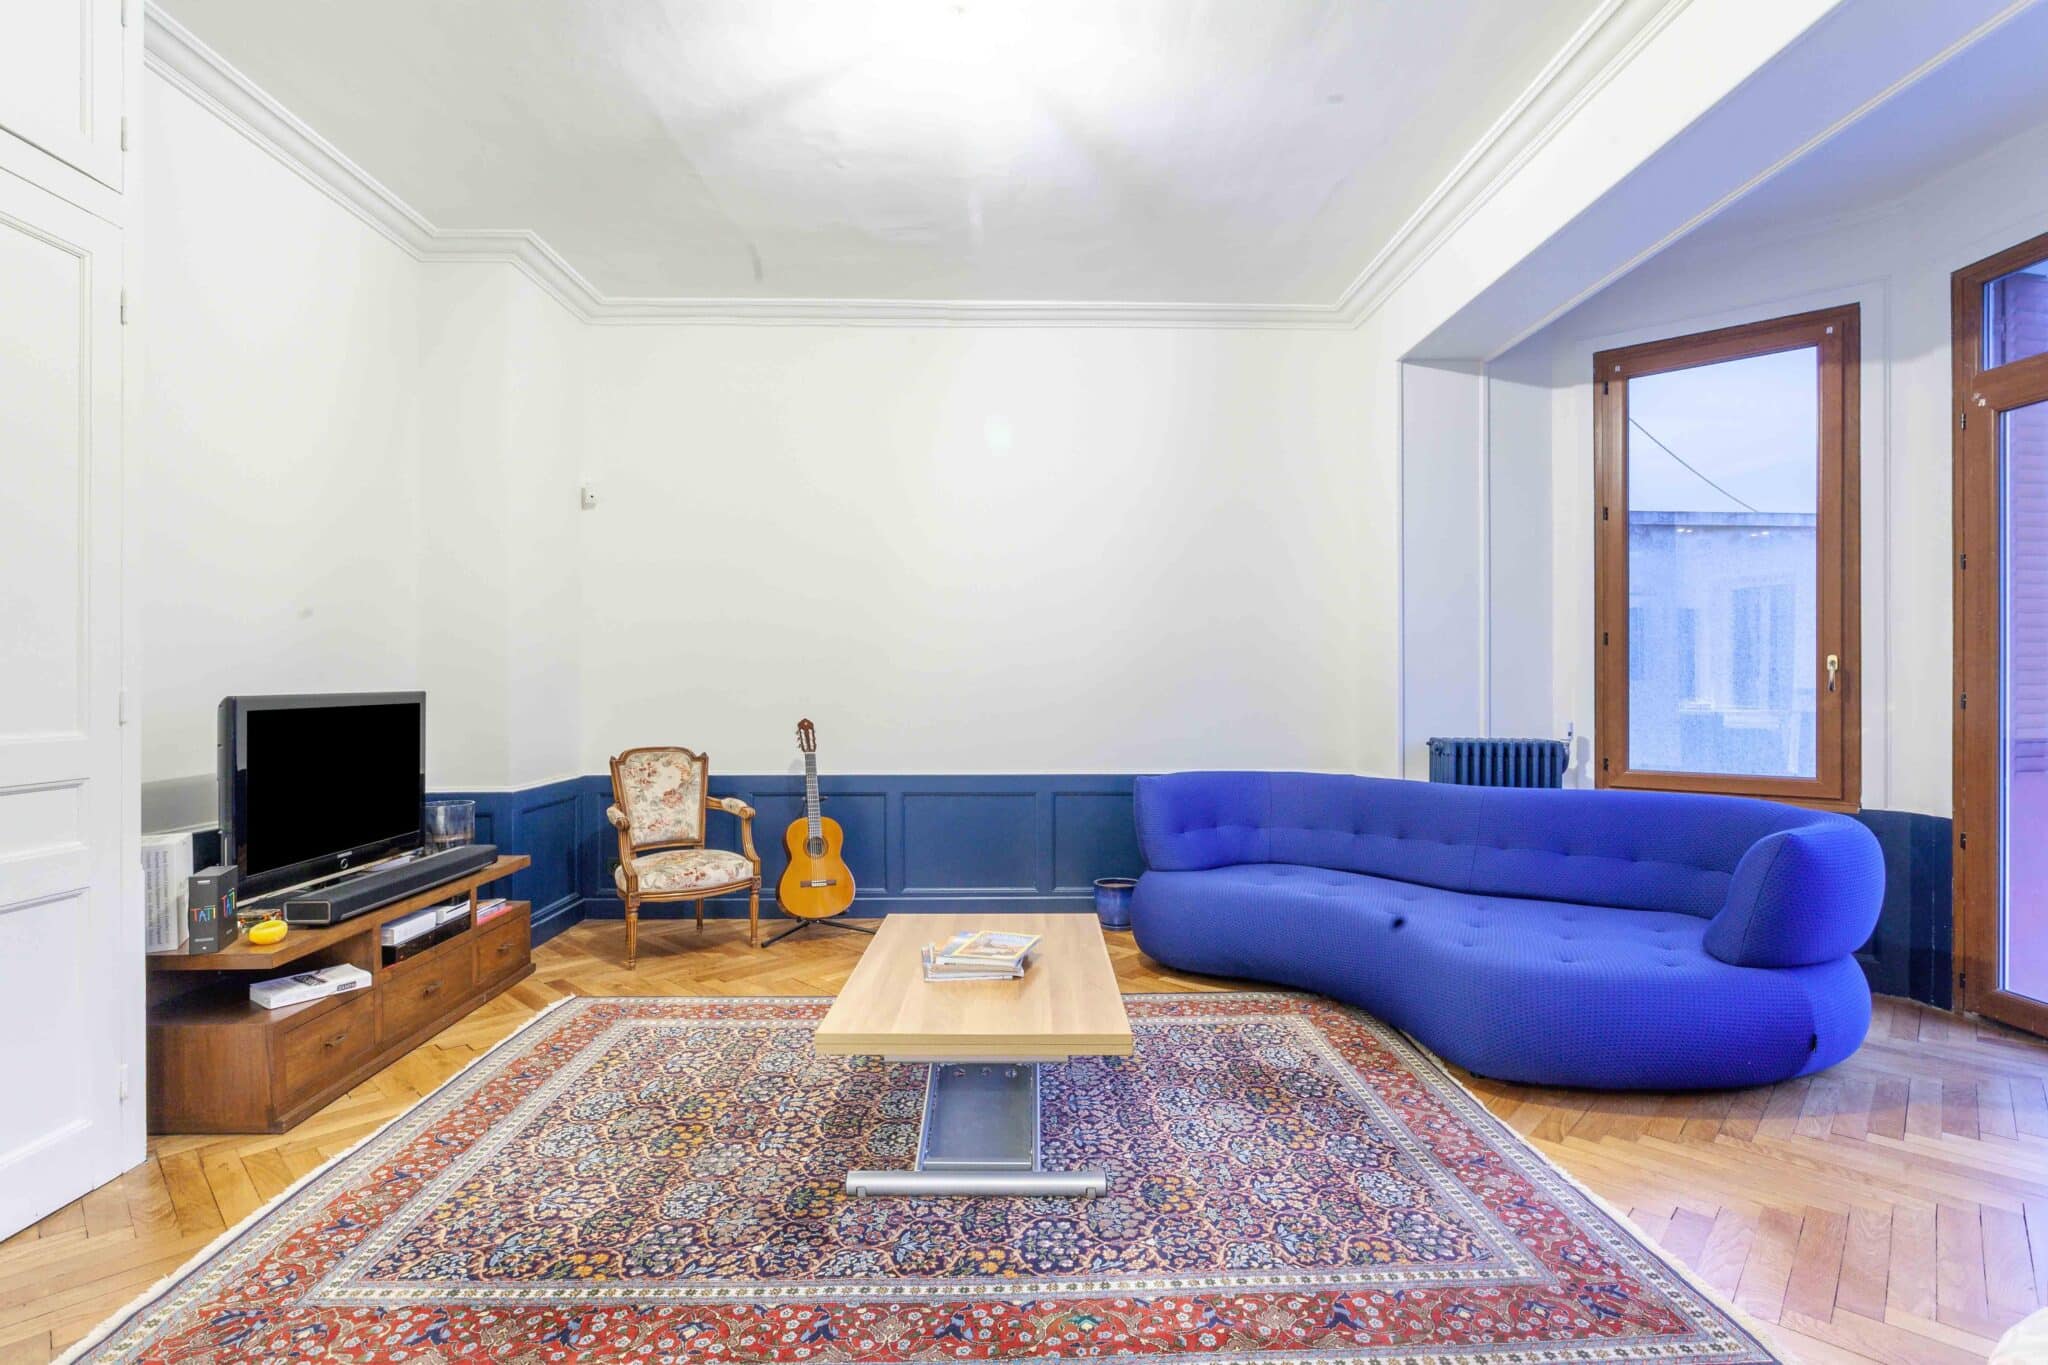 rénovation maison salon canapé bleu - grandes ouvertures